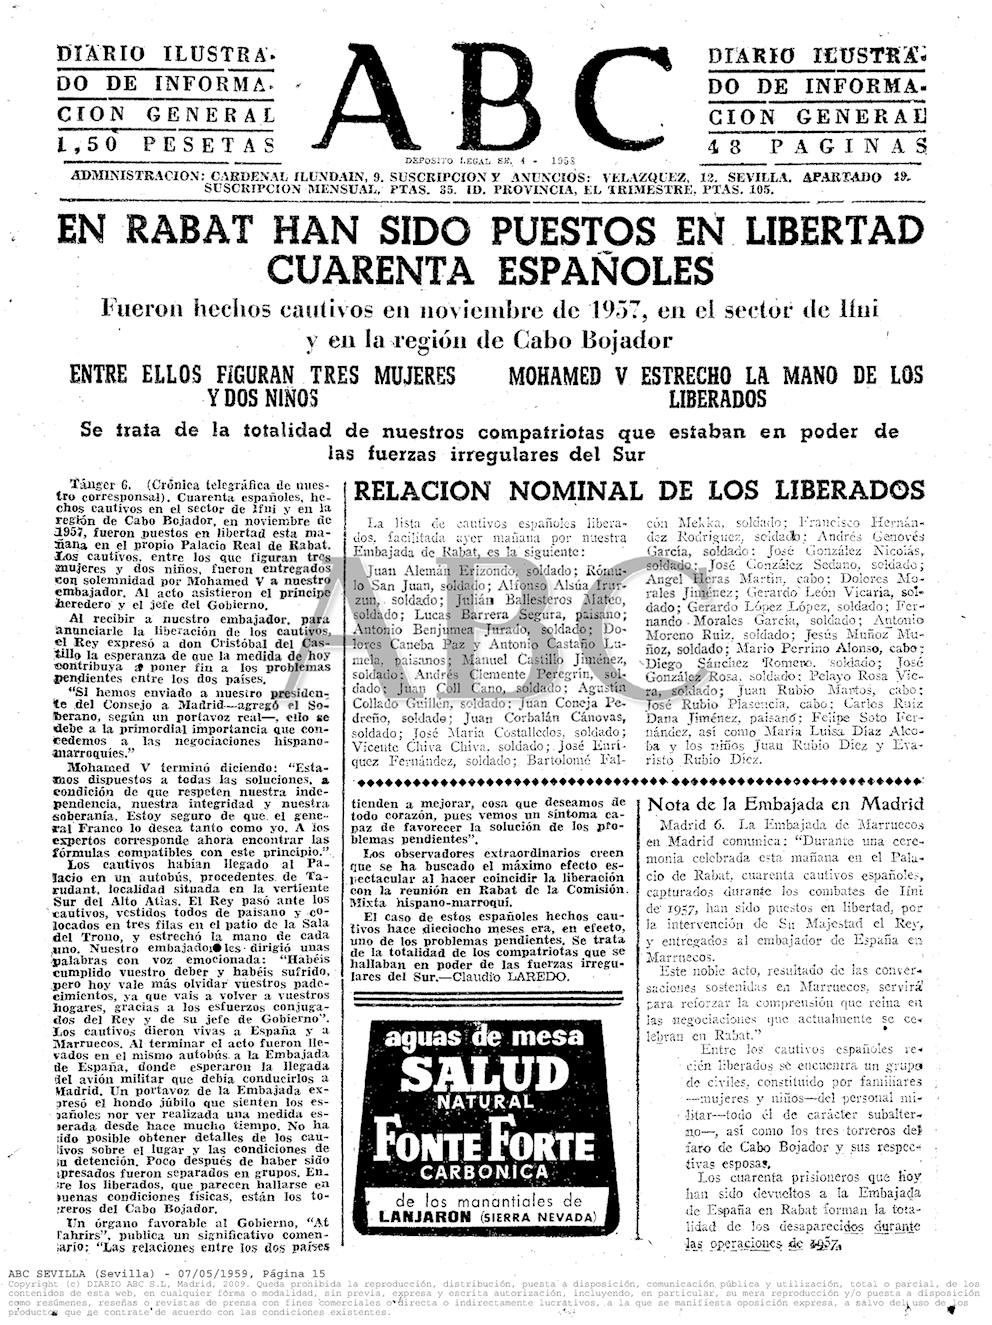 ABC (Sevilla) del 7 de mayo de 1959, con la noticia de la liberación de 40 prisioneros.